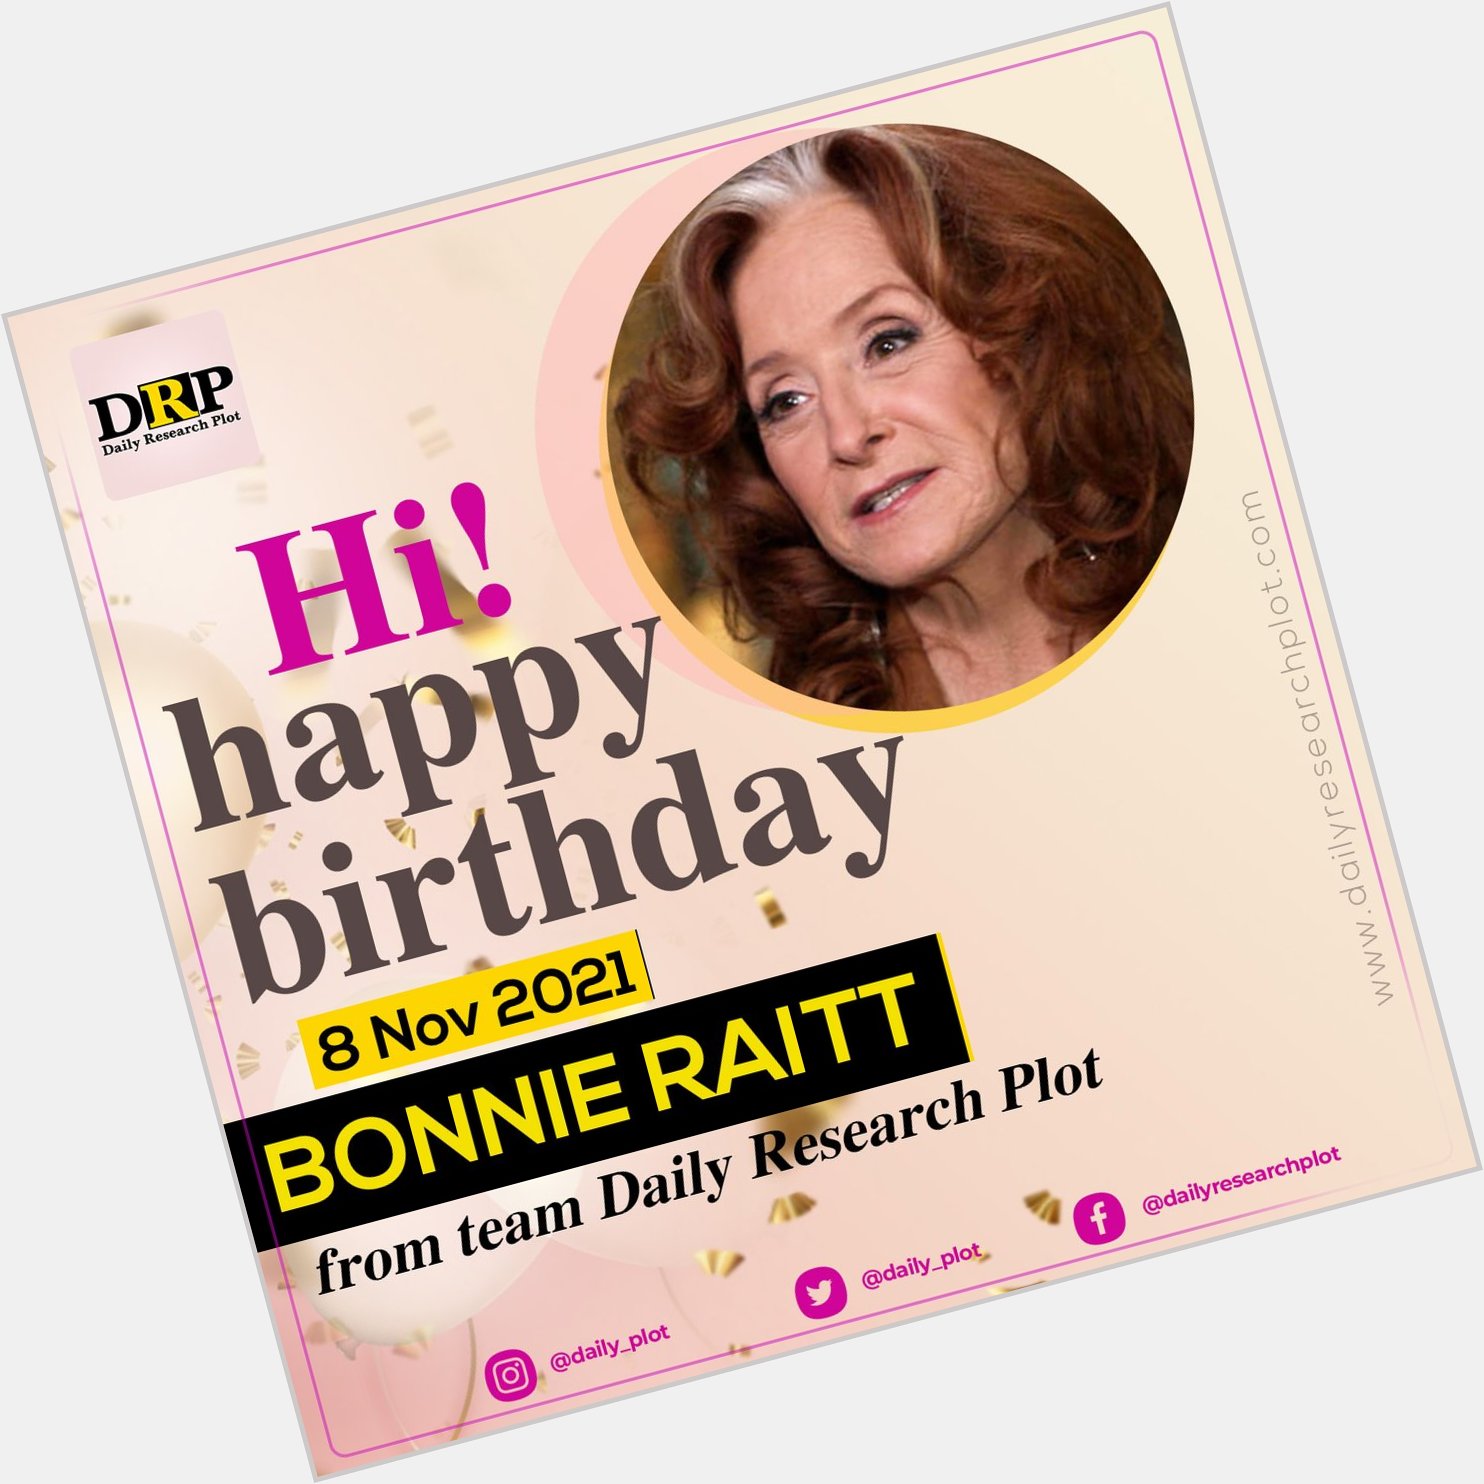 Happy Birthday!
Bonnie Raitt   